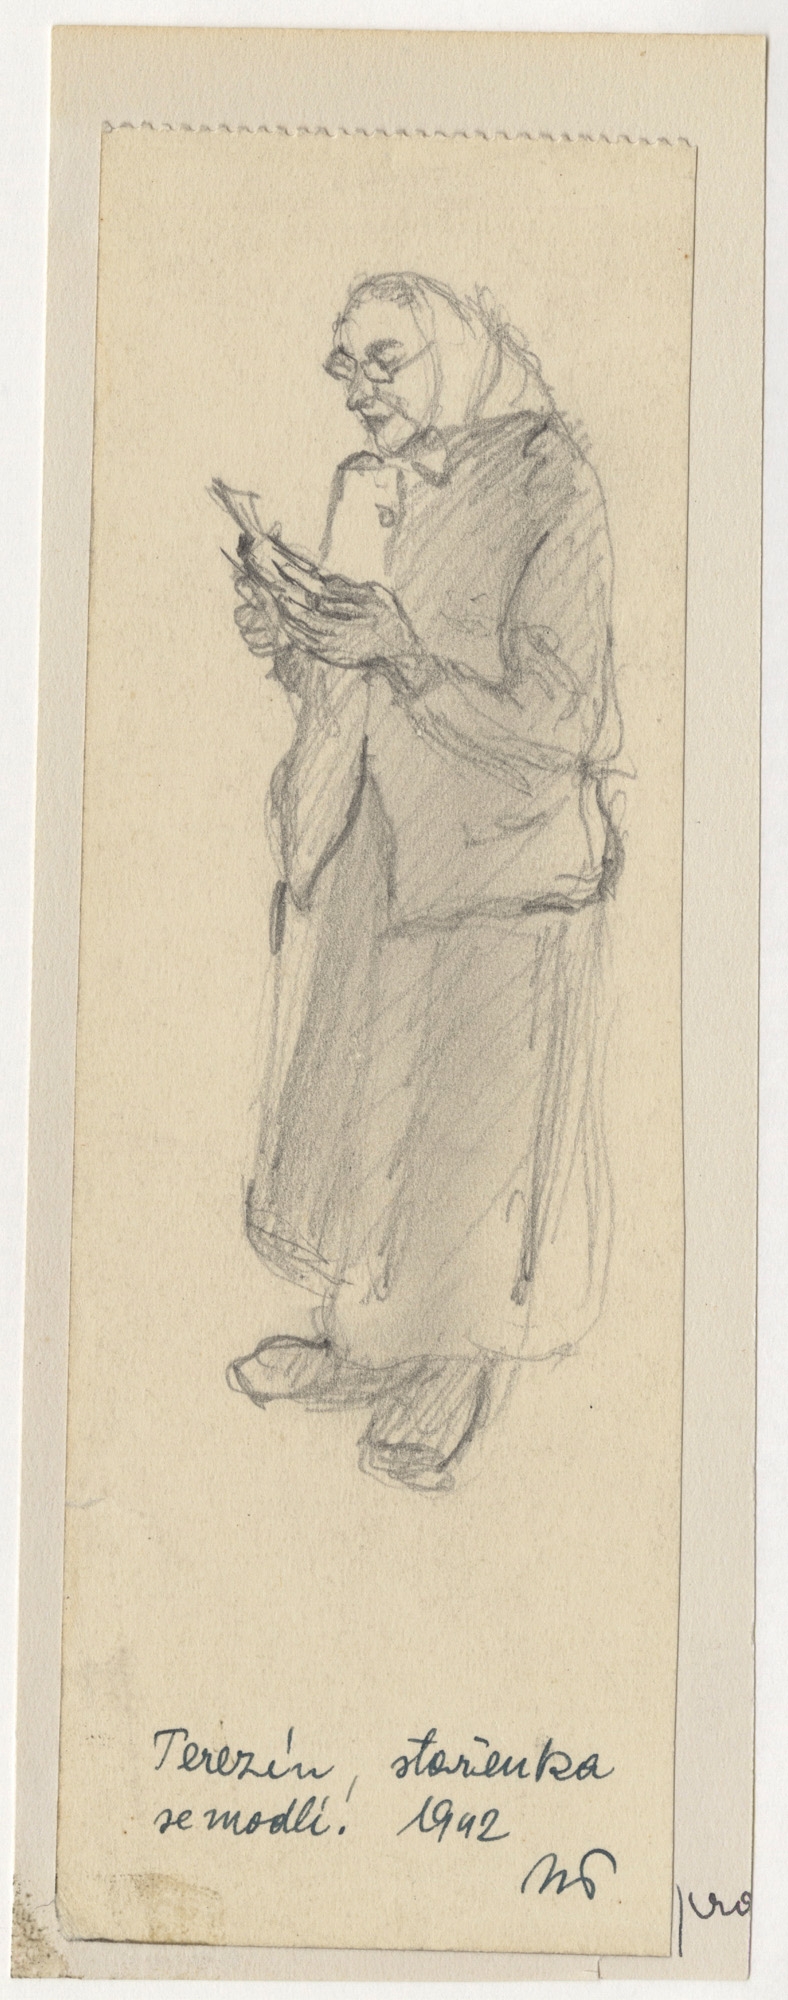 Norbert Troller, An Old Woman Praying, 1942. LBI, 82.303.